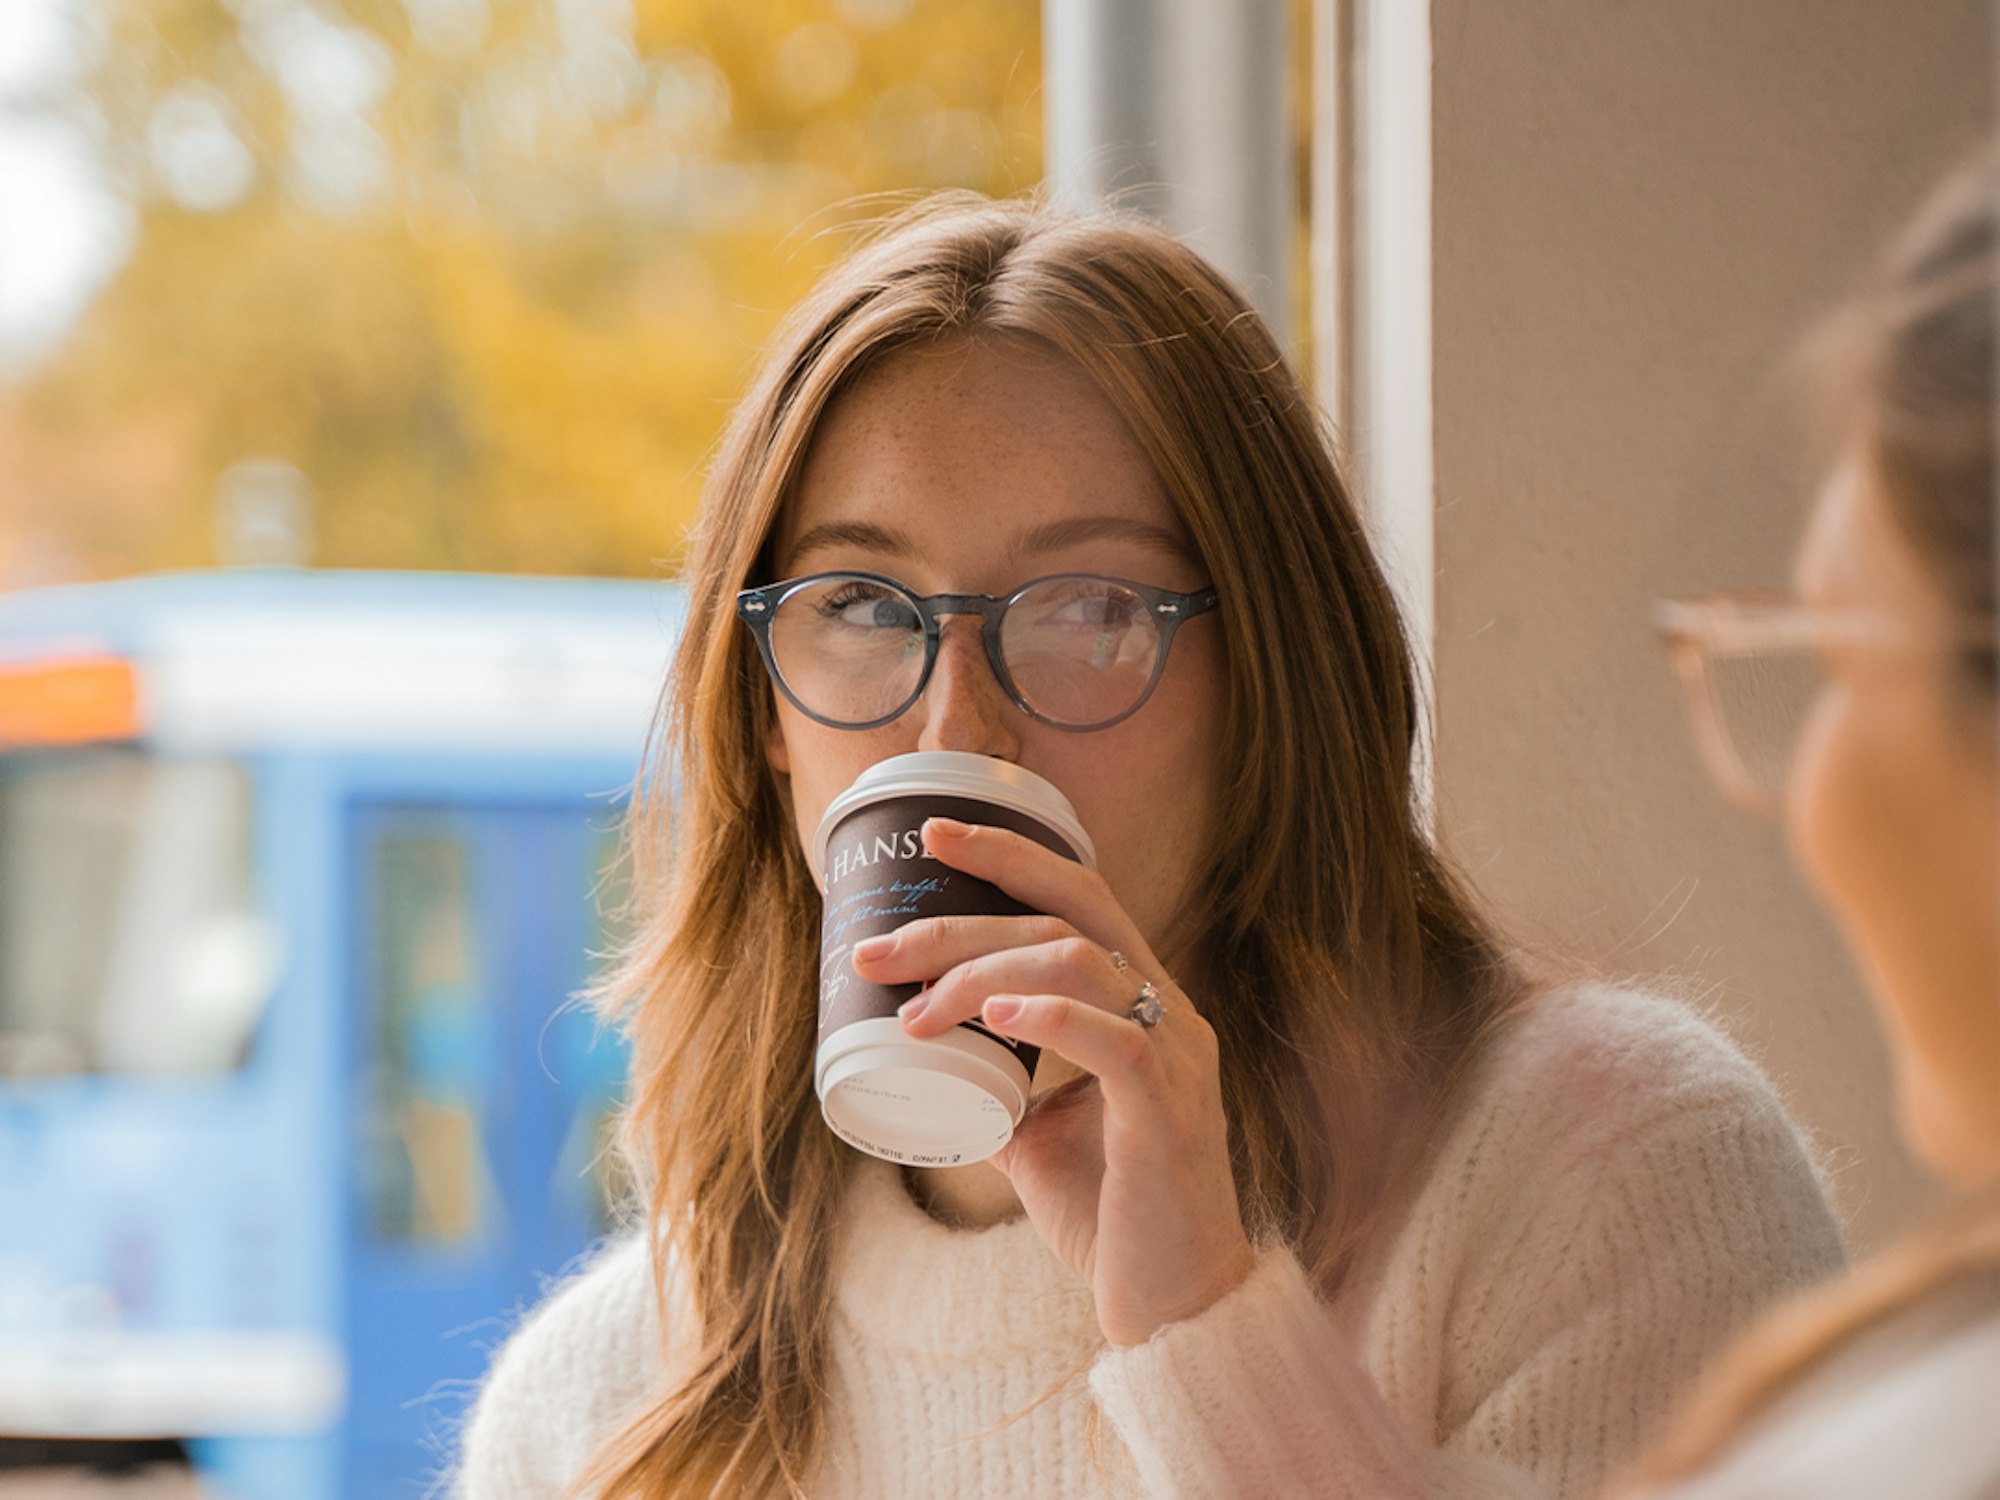 Kvinne drikker kaffe med trikken utenfor vinduet